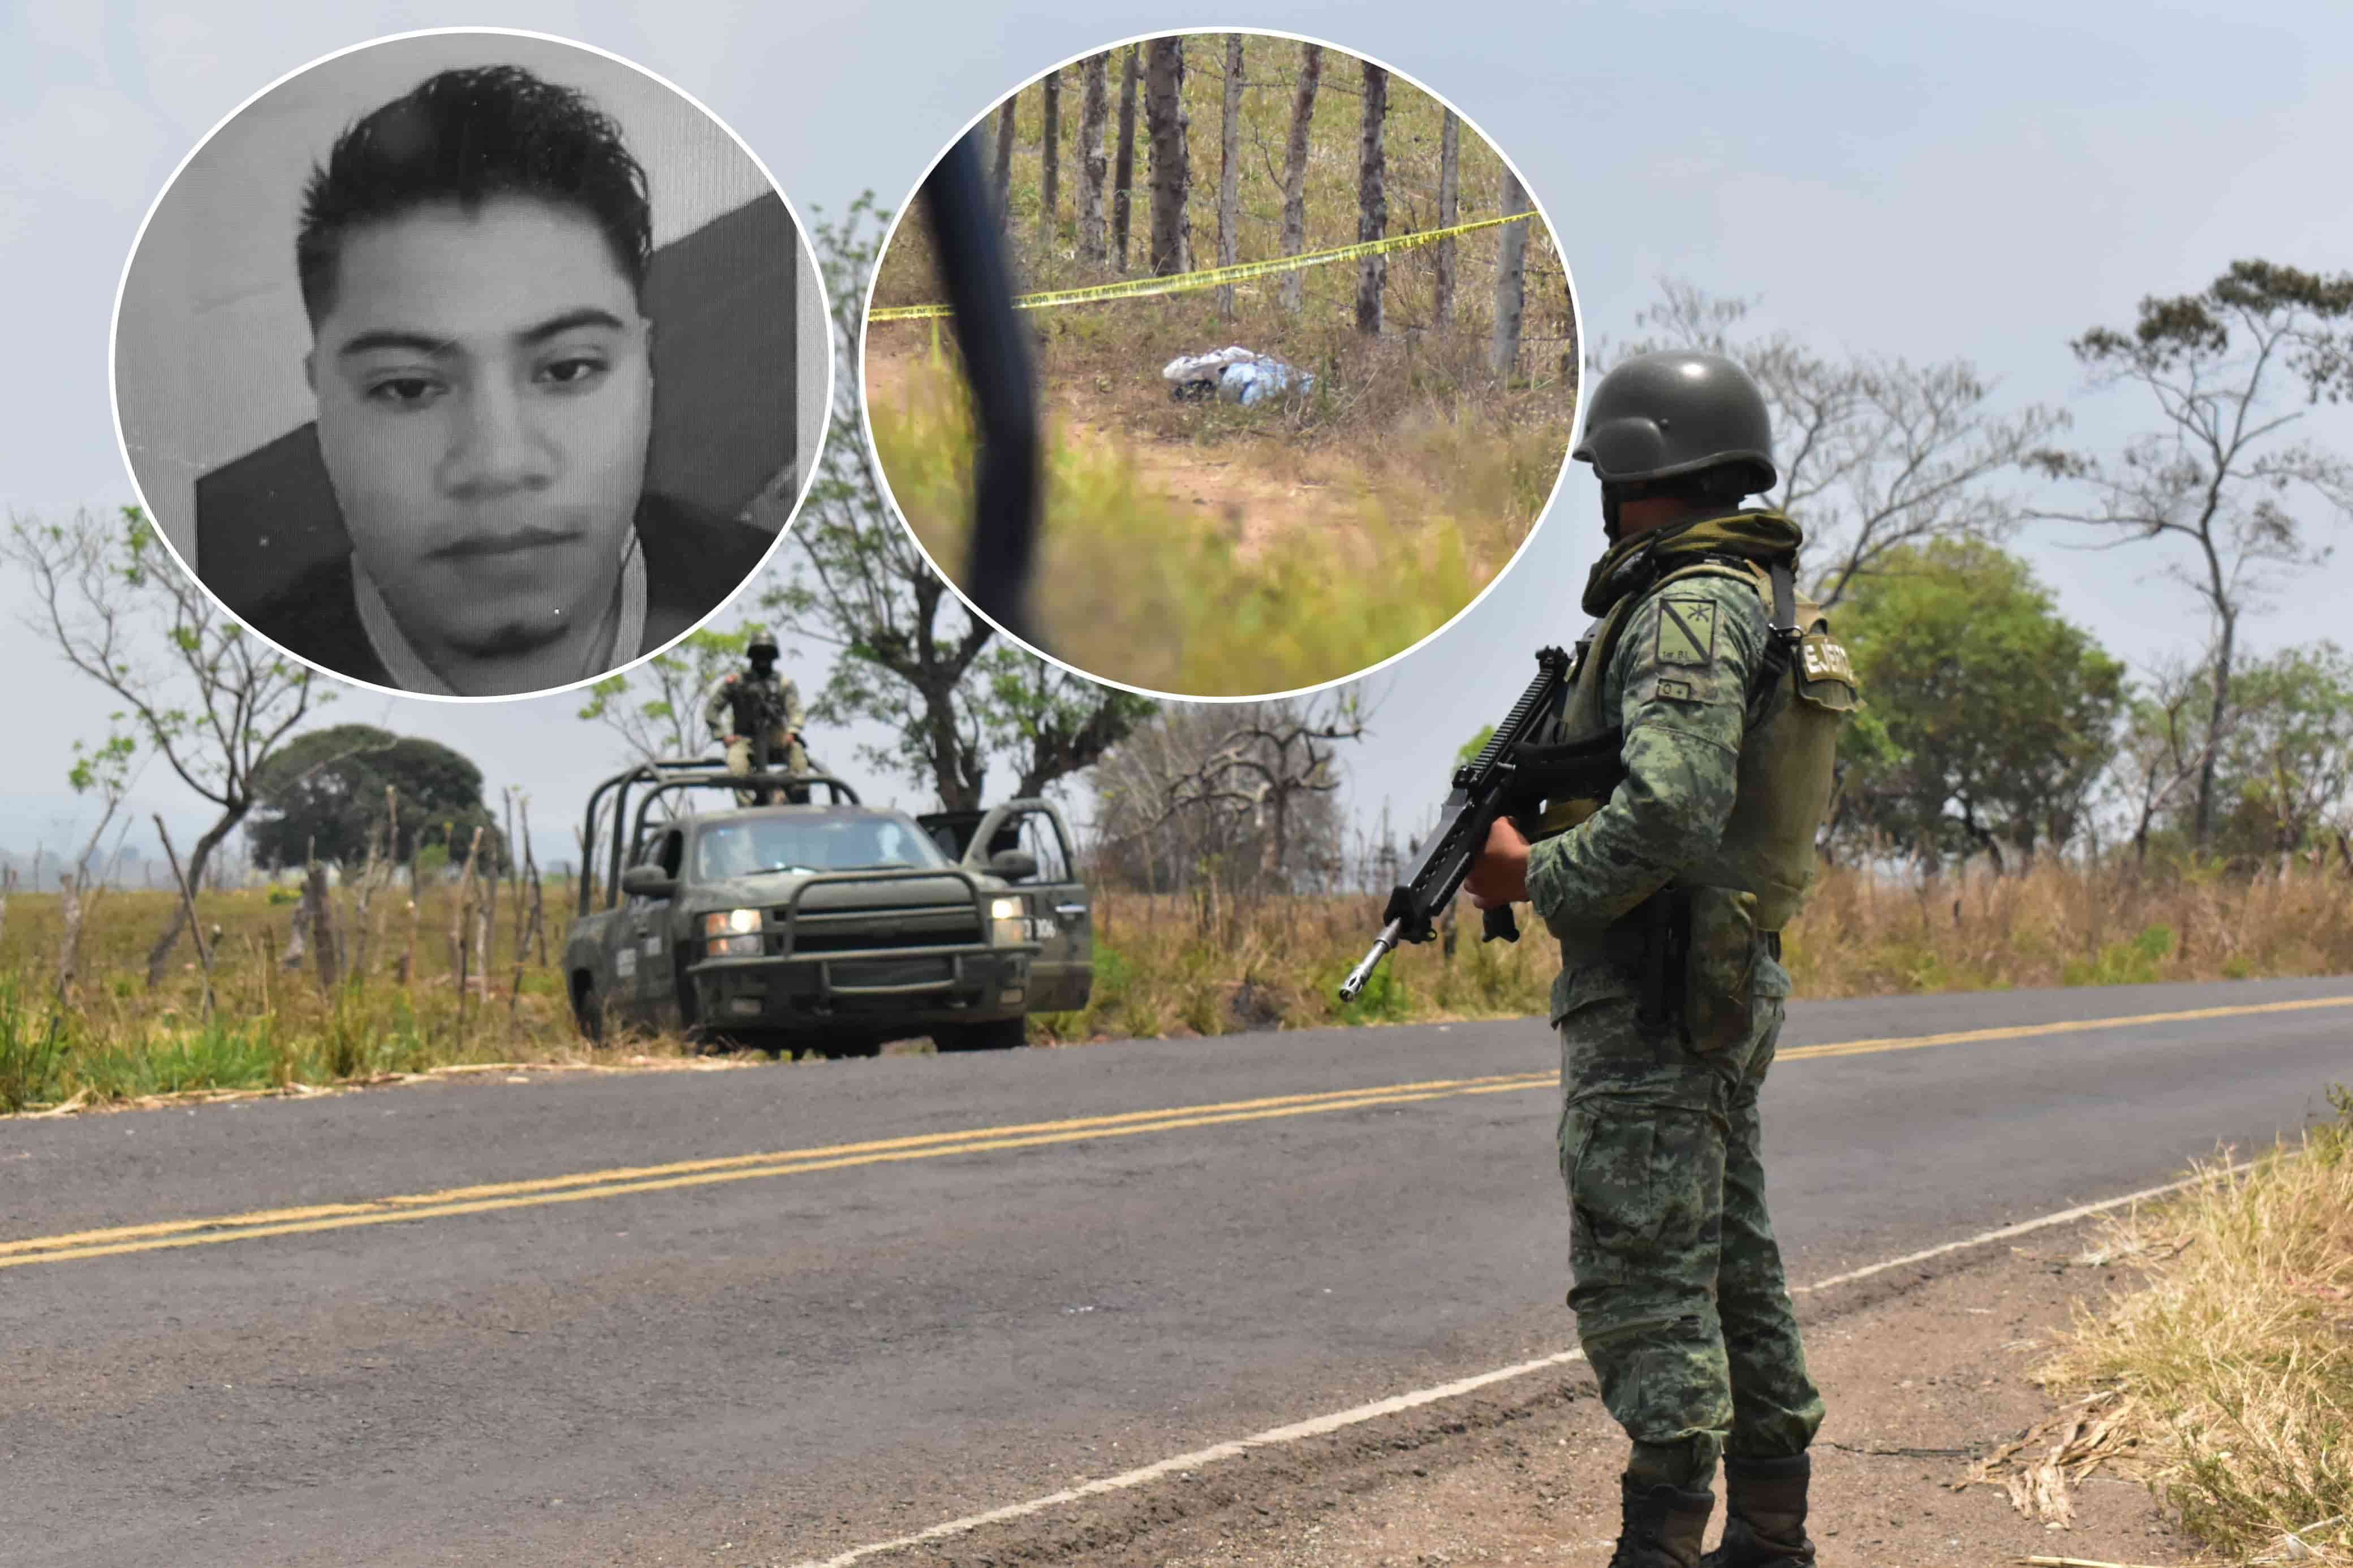 Con huellas de violencia, localizan cuerpo de joven desaparecido en Acayucan l VIDEO